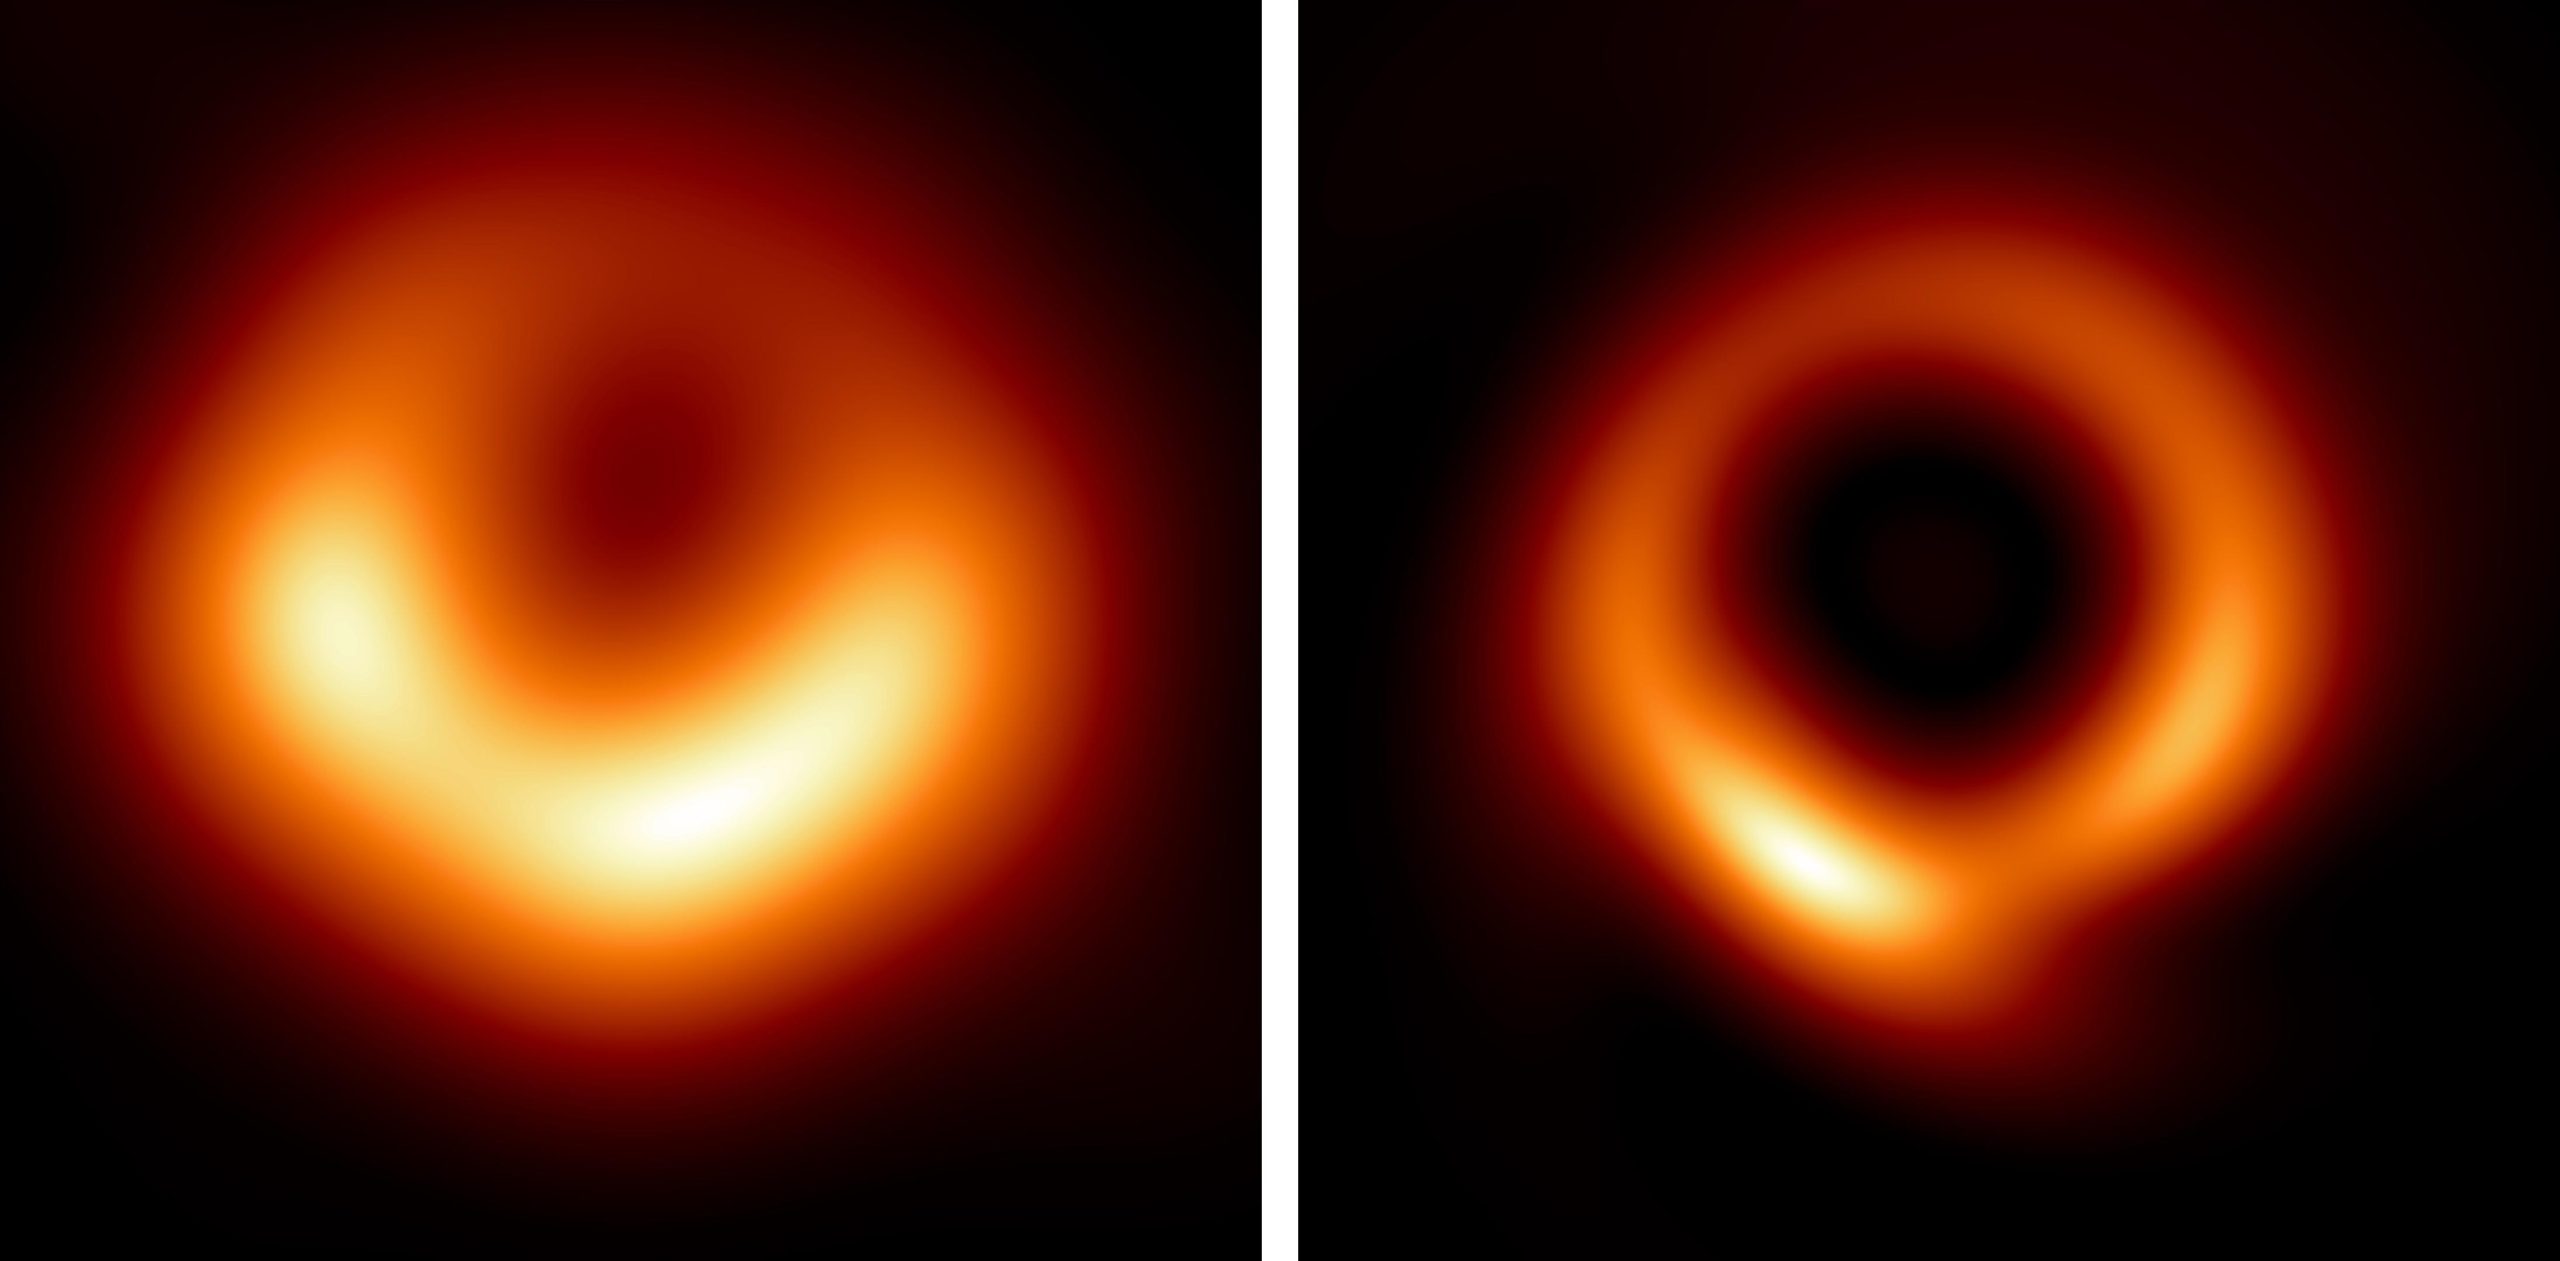 La inteligencia artificial revela una impresionante vista en alta definición del enorme agujero negro de M87